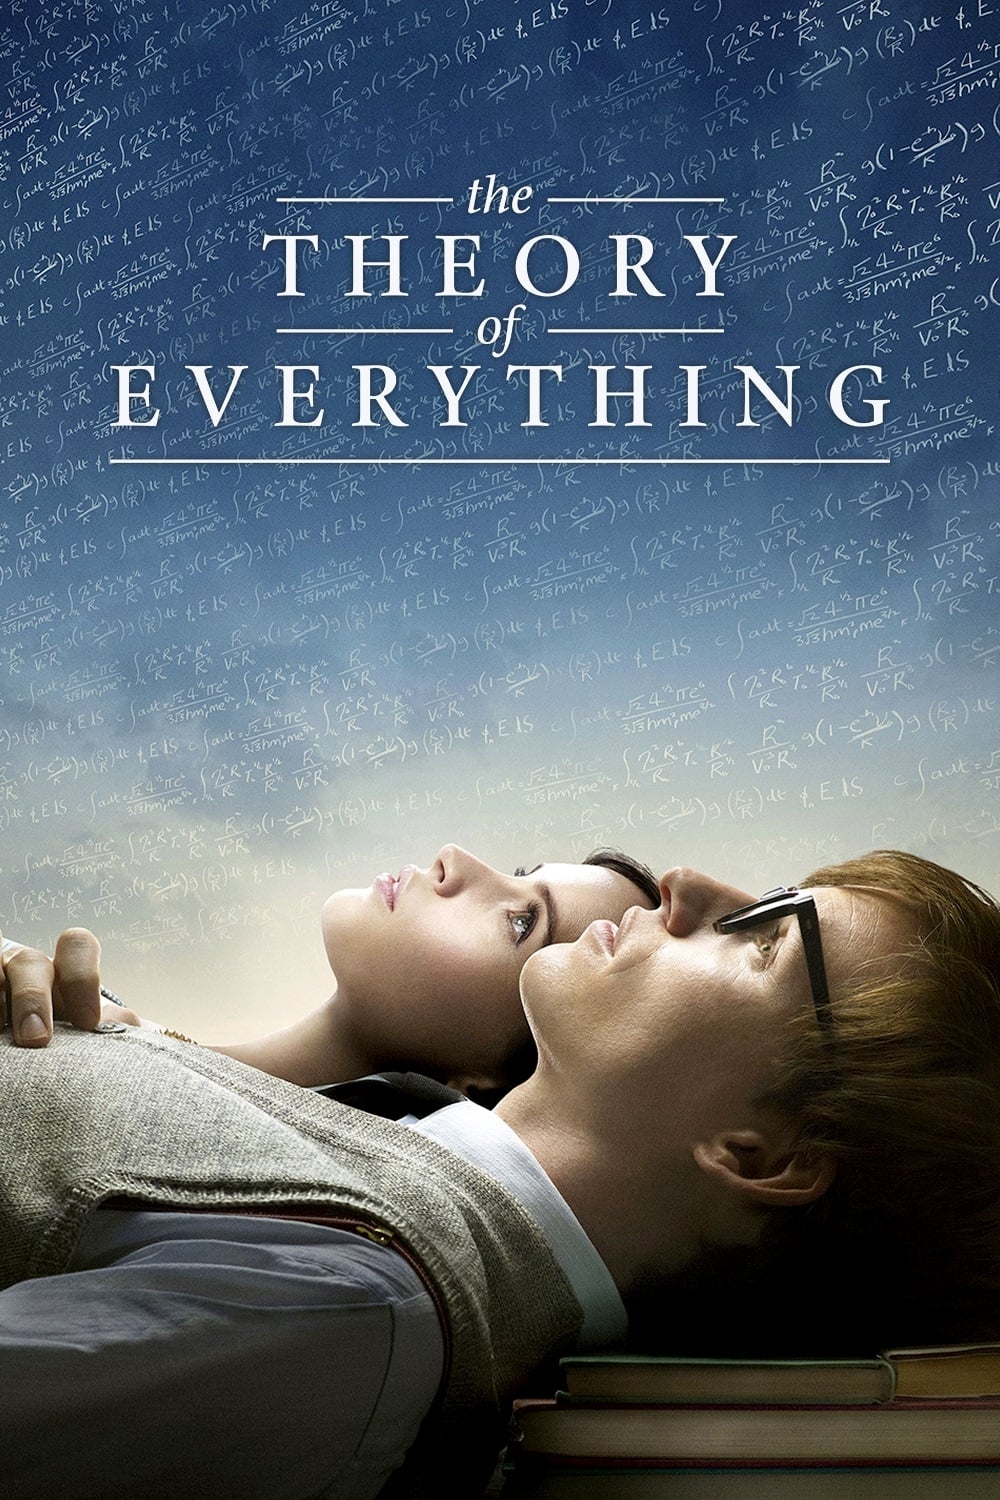 ดูหนังออนไลน์ฟรี The Theory of Everything ทฤษฎีรักนิรันดร